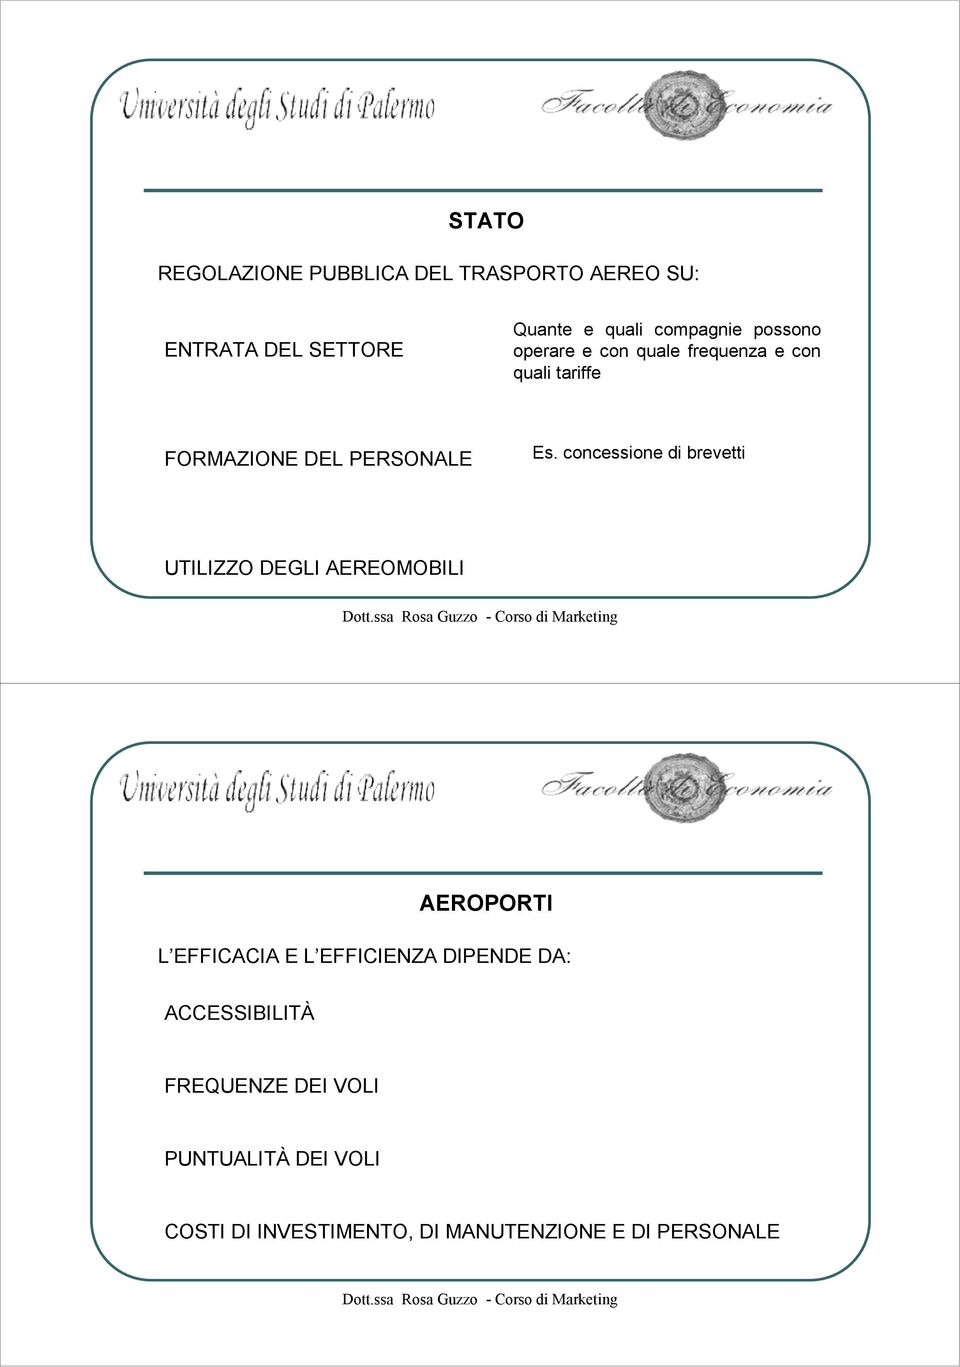 concessione di brevetti UTILIZZO DEGLI AEREOMOBILI AEROPORTI L EFFICACIA E L EFFICIENZA DIPENDE